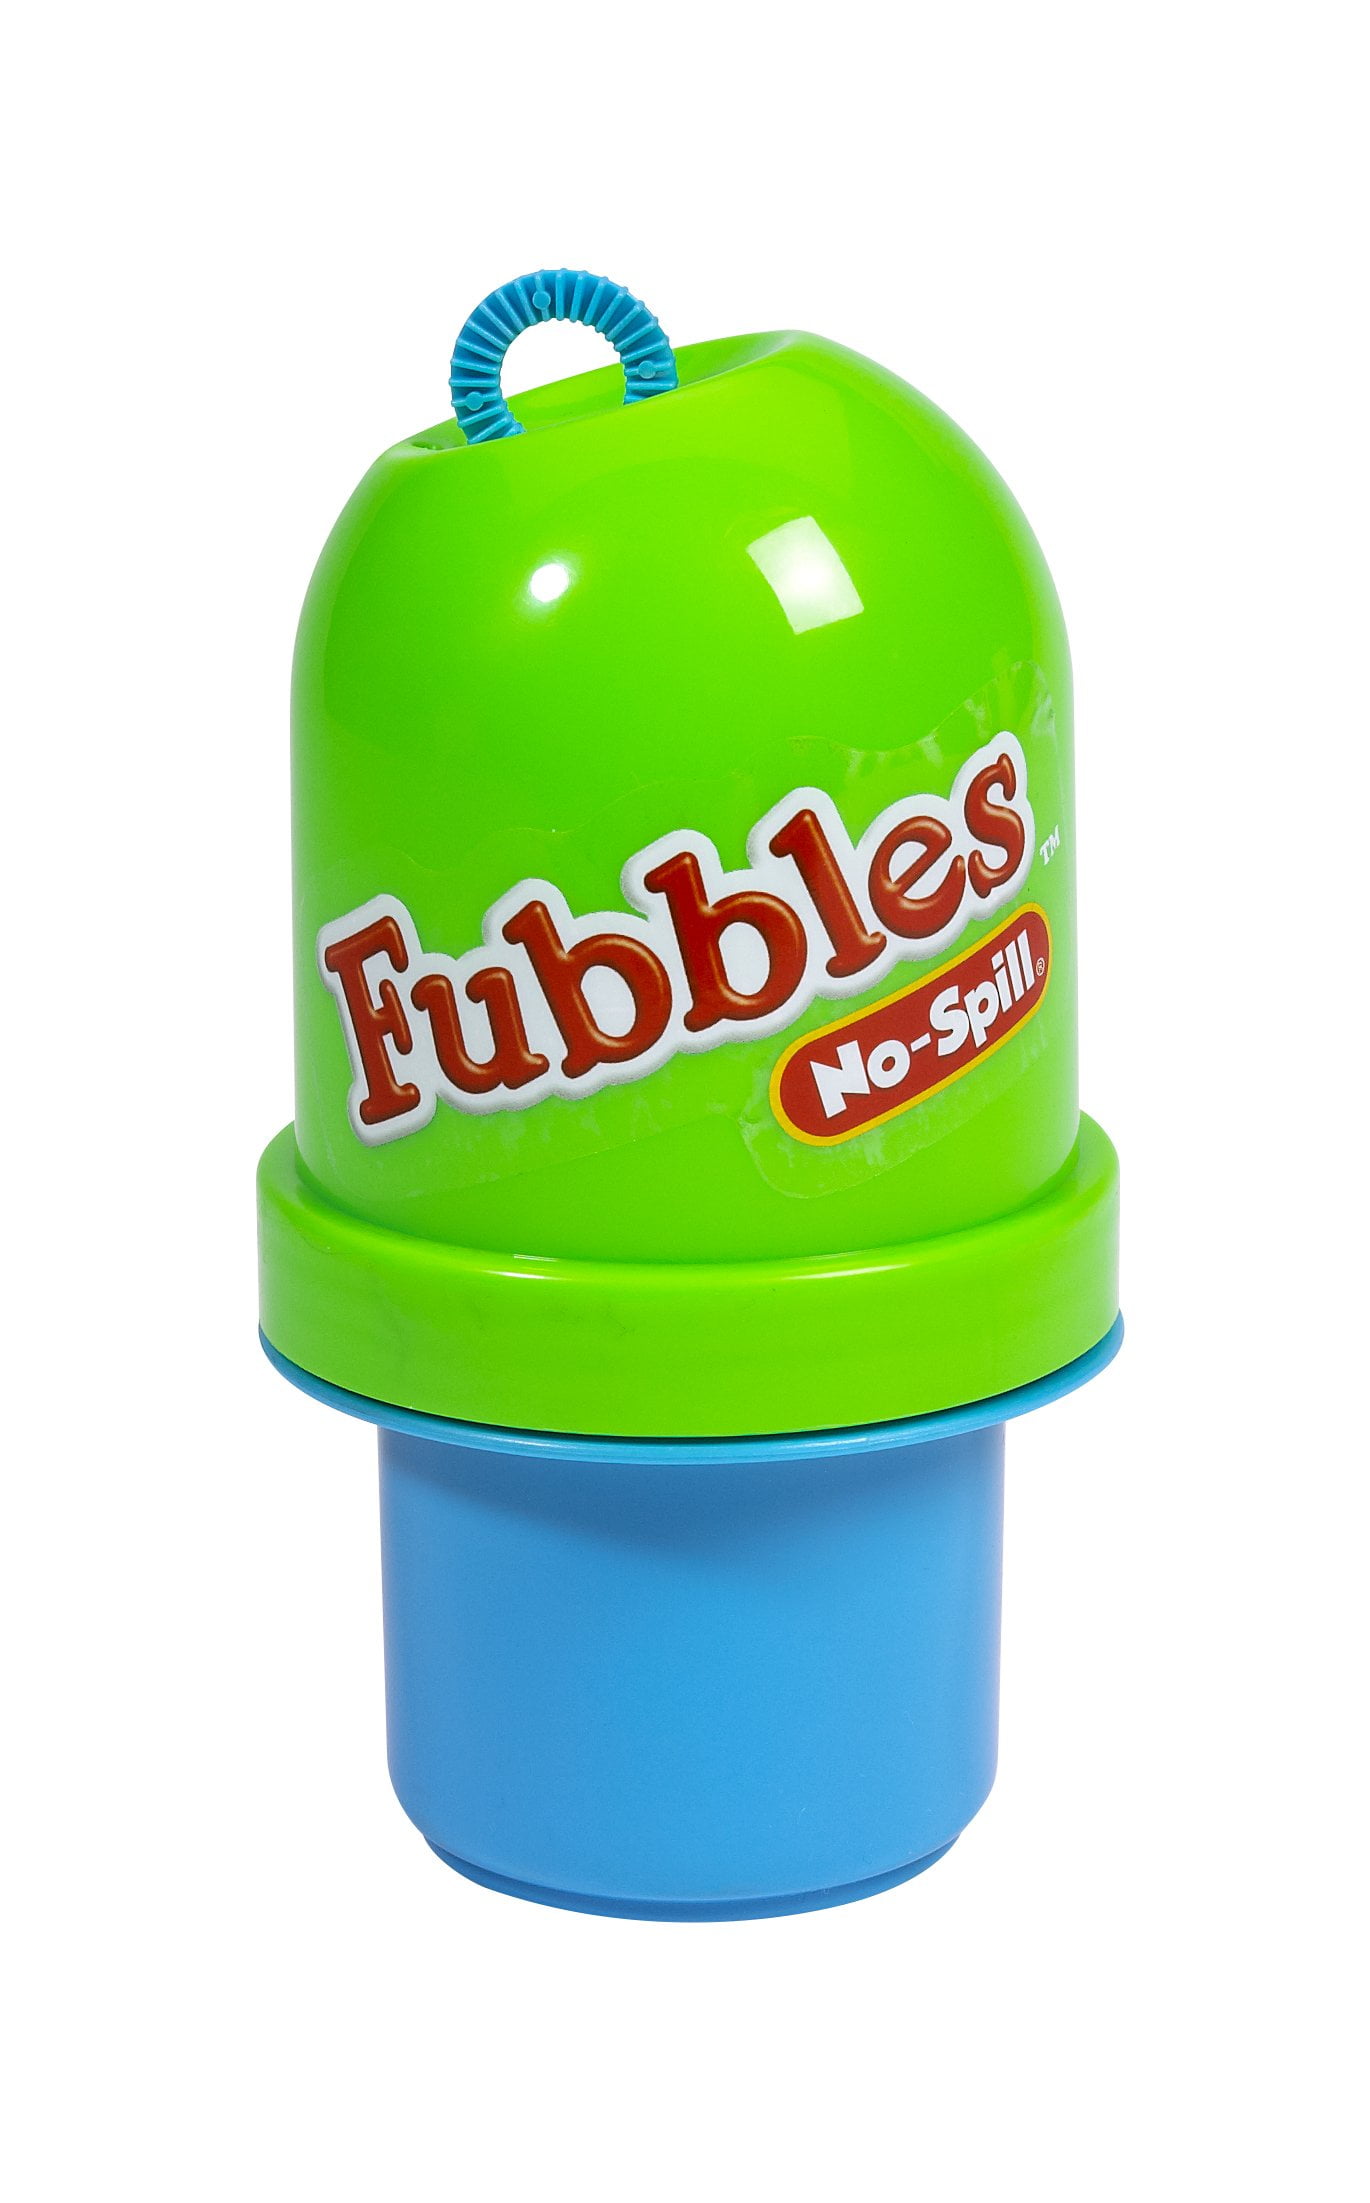 Little Kids Fubbles No-Spill Tumbler Includes 2oz Bubble Solution